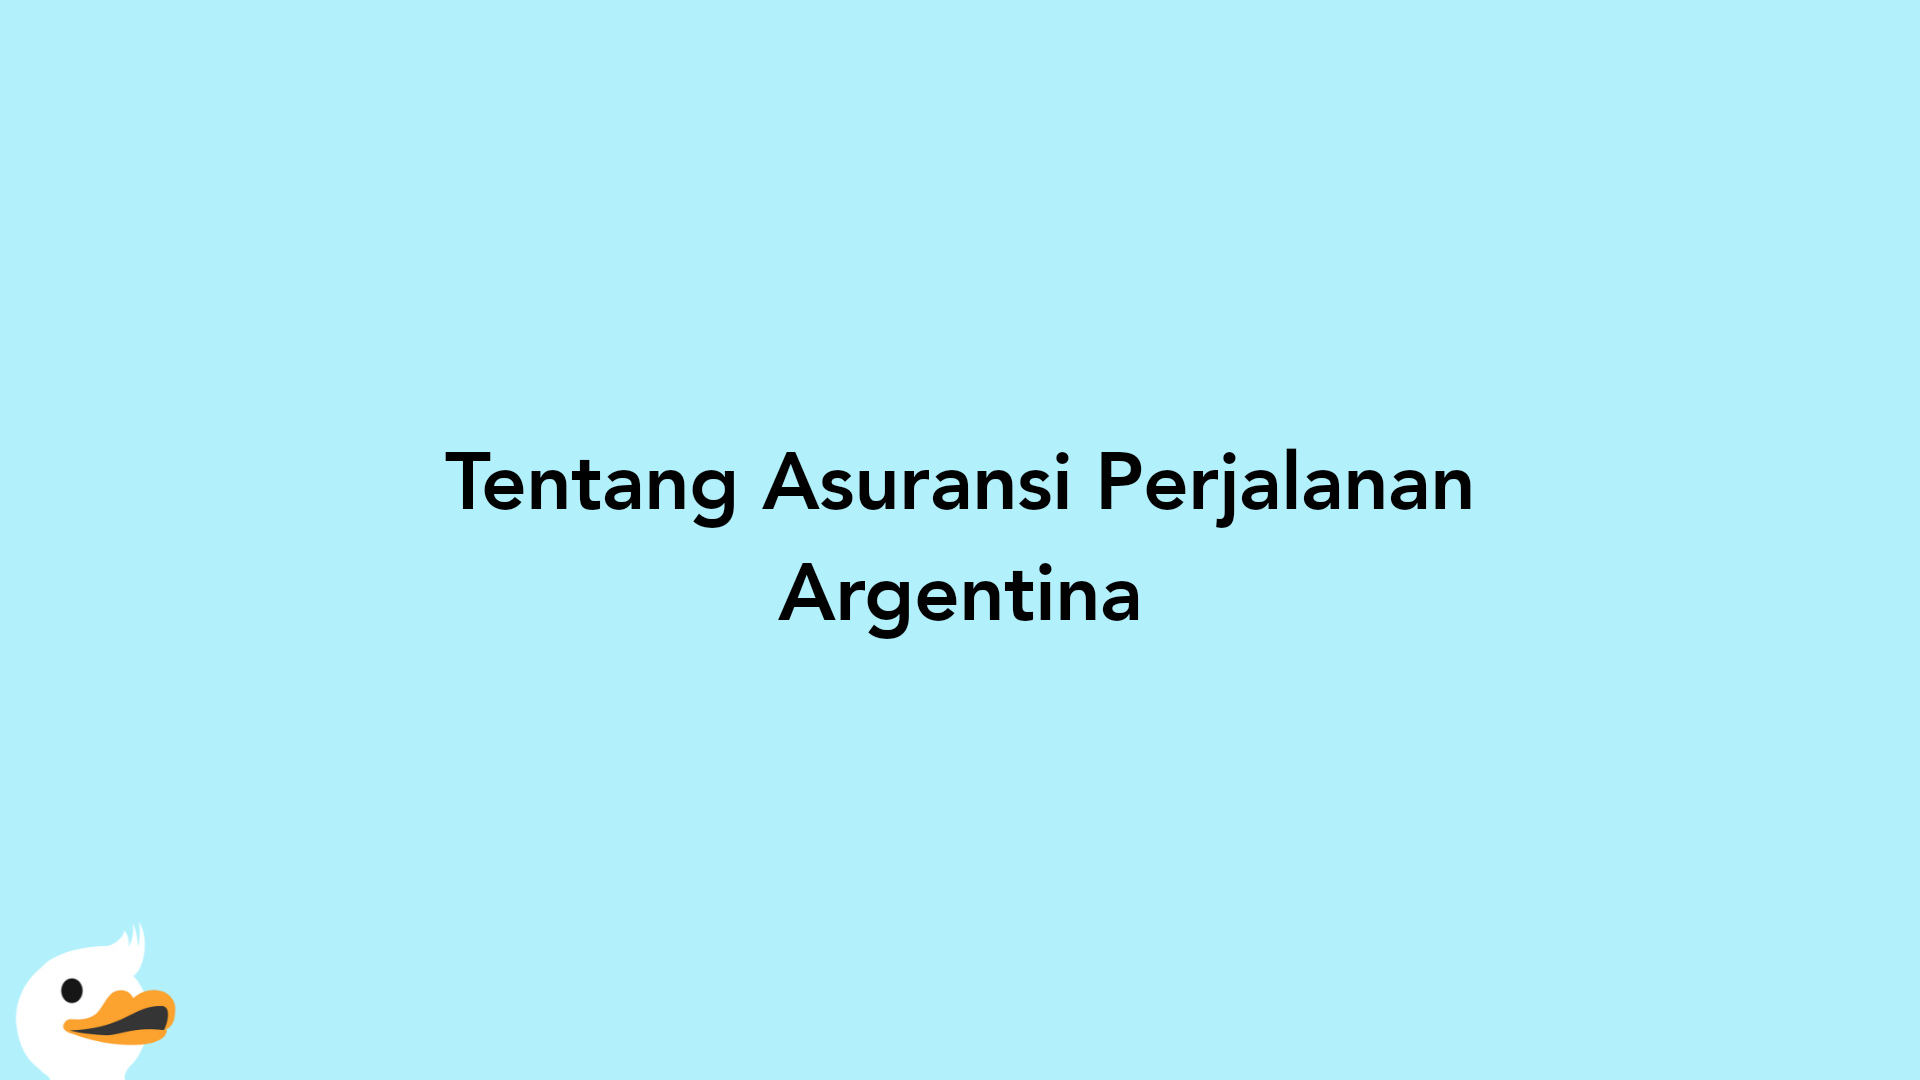 Tentang Asuransi Perjalanan Argentina